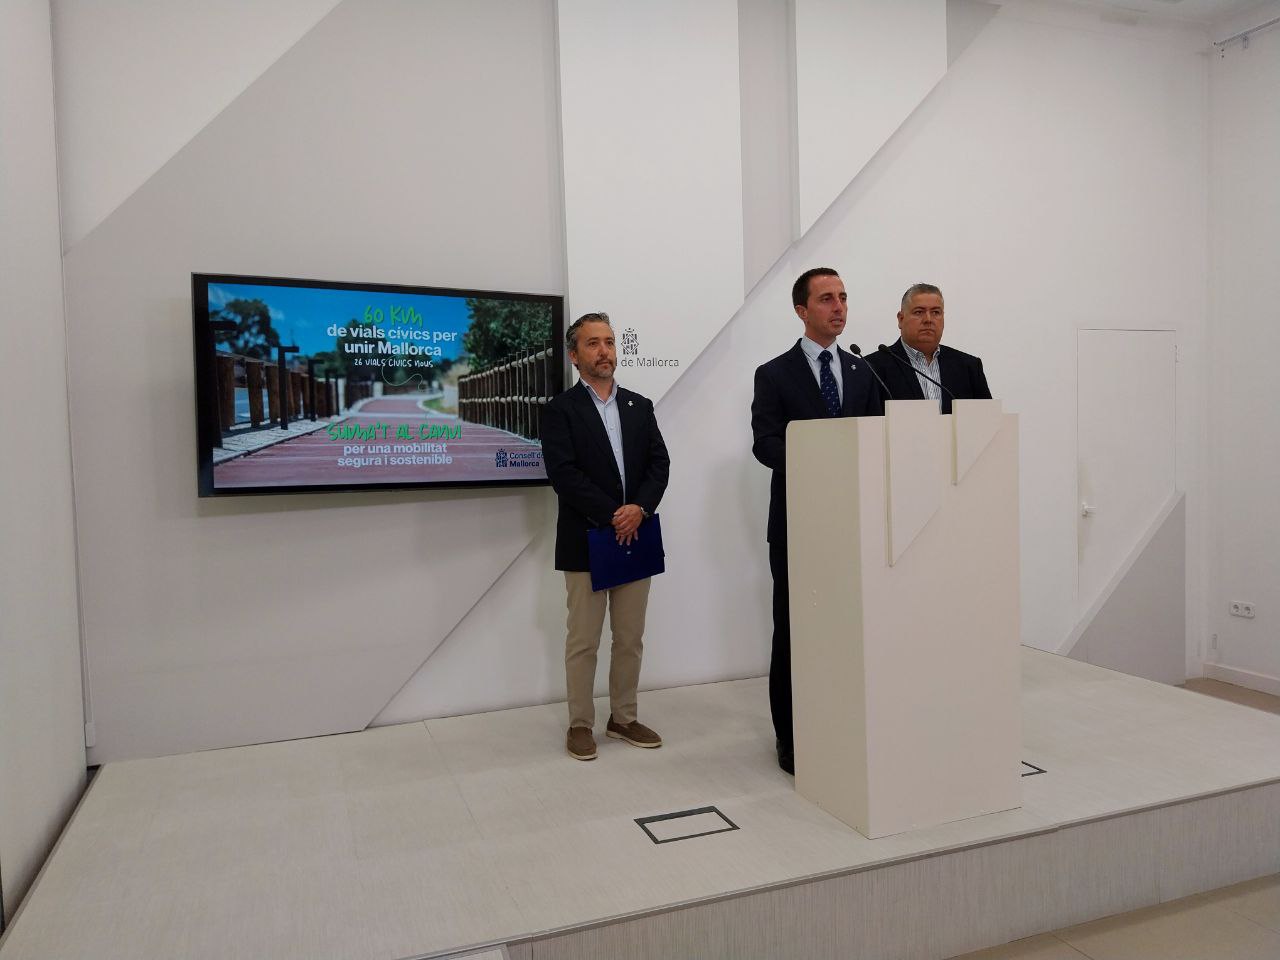 El presidente Galmés presenta el plan para construir 26 viales cívicos en Mallorca.